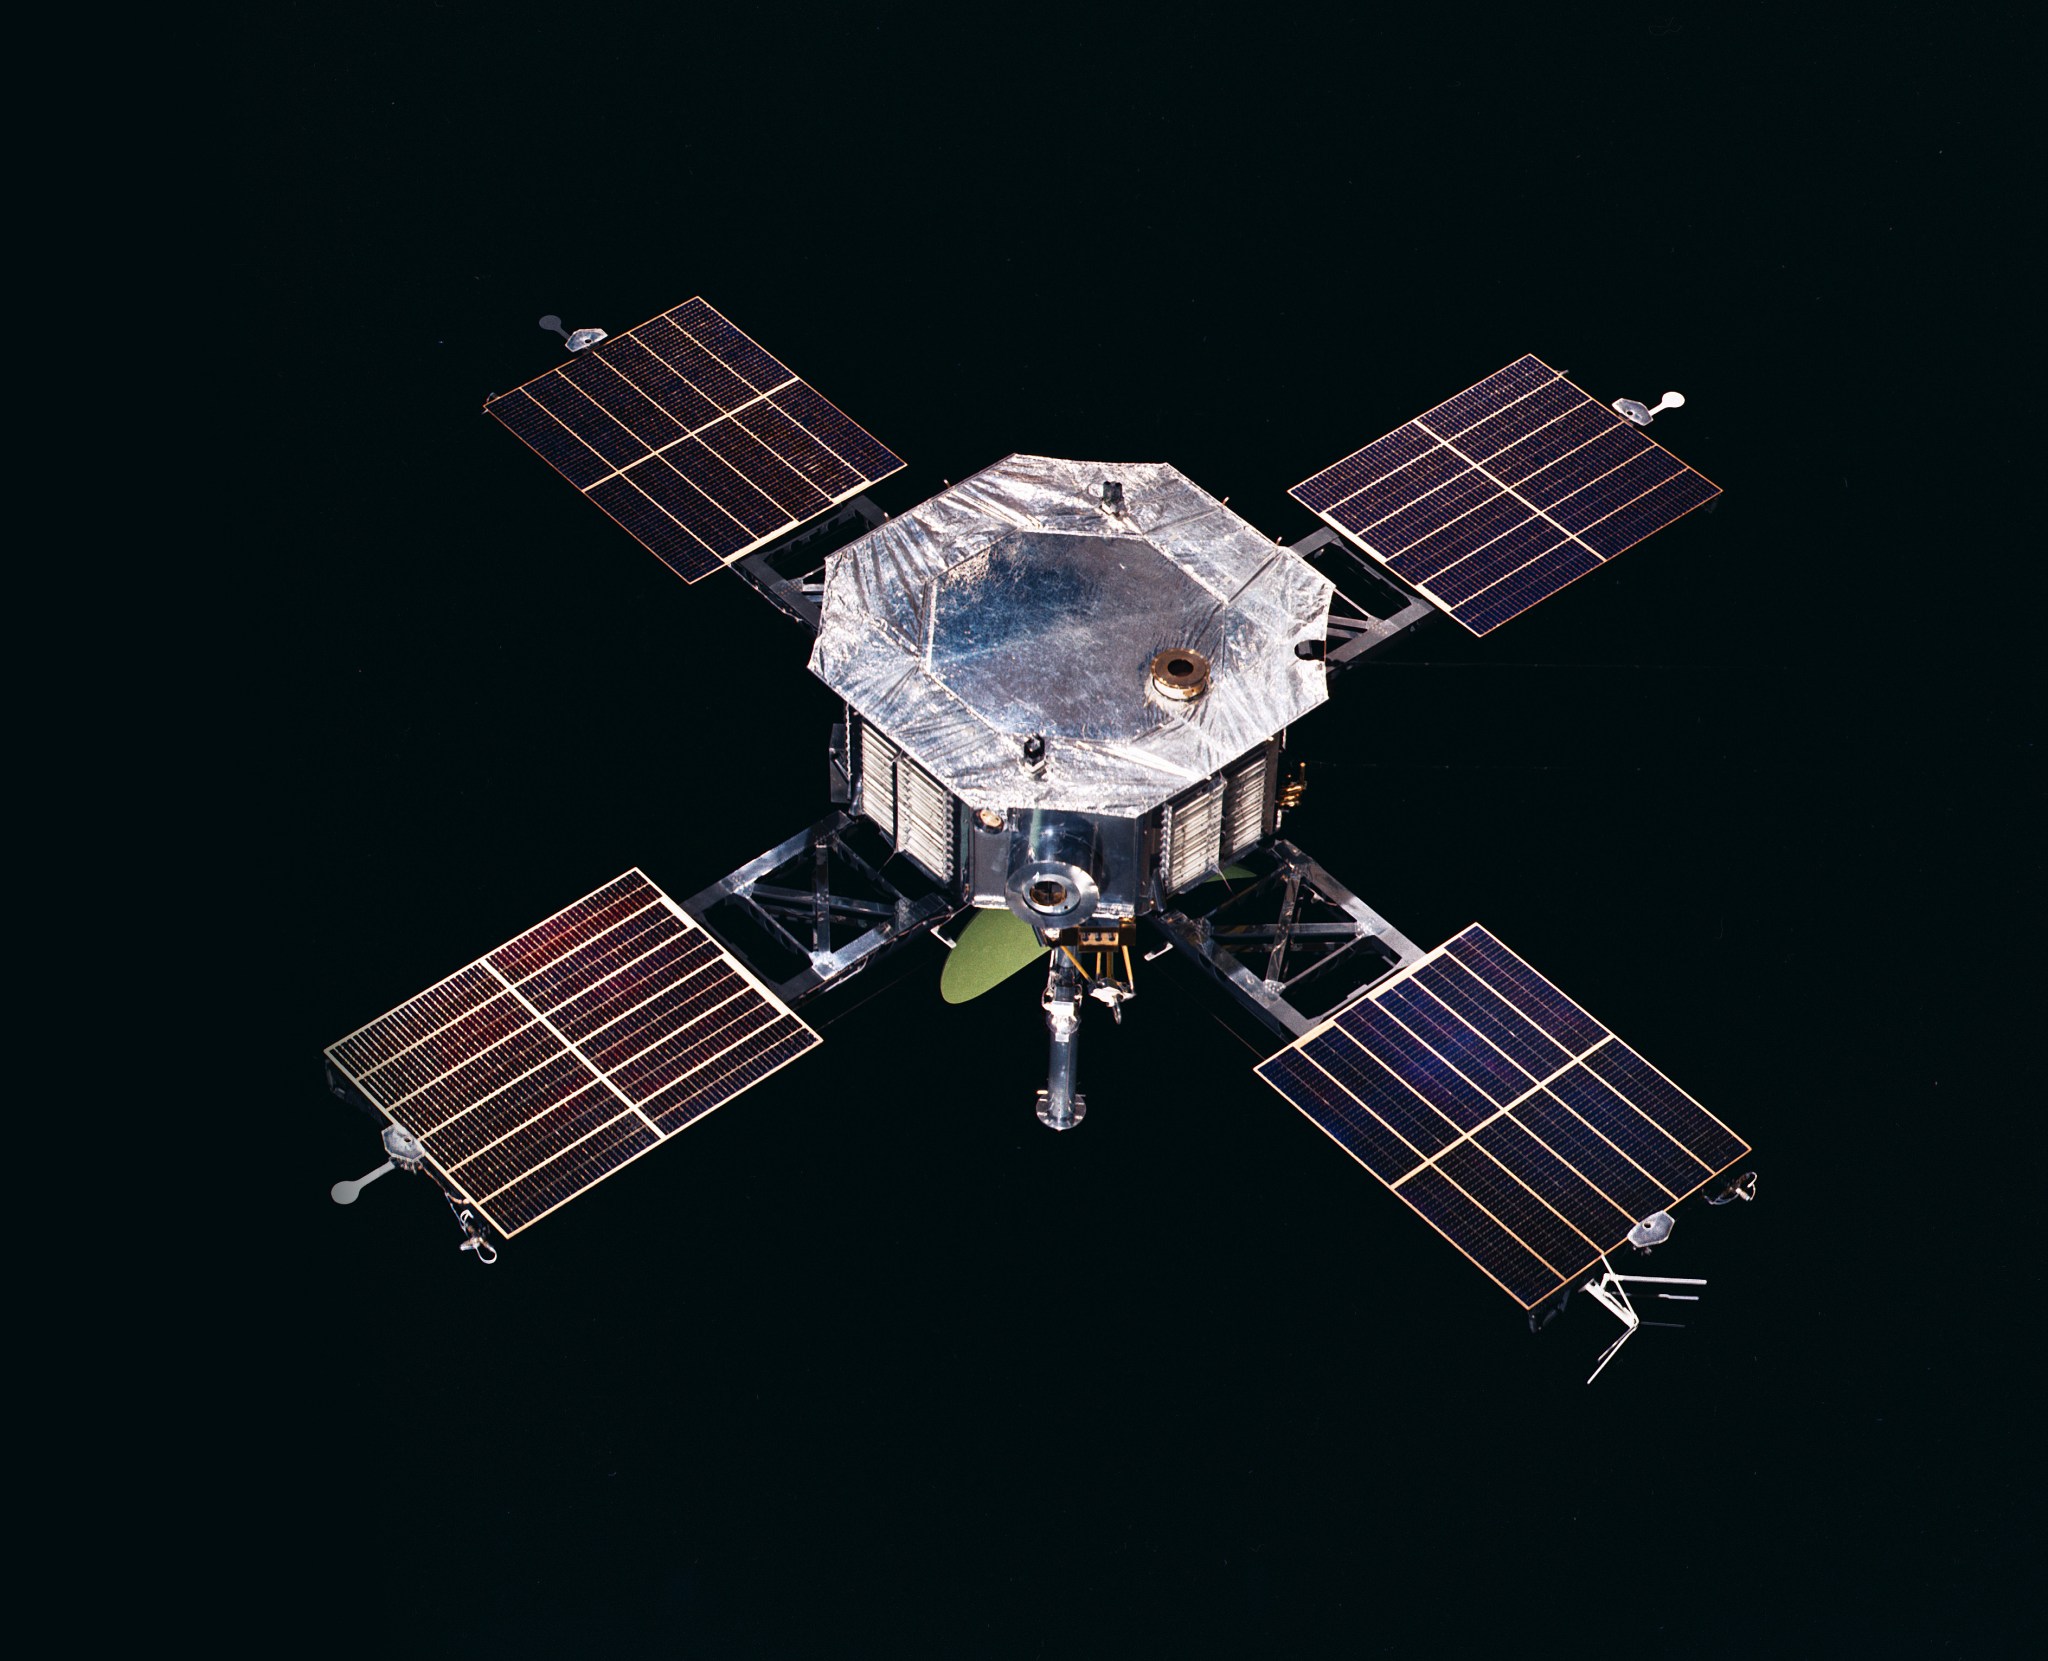 The Mariner 5 spacecraft